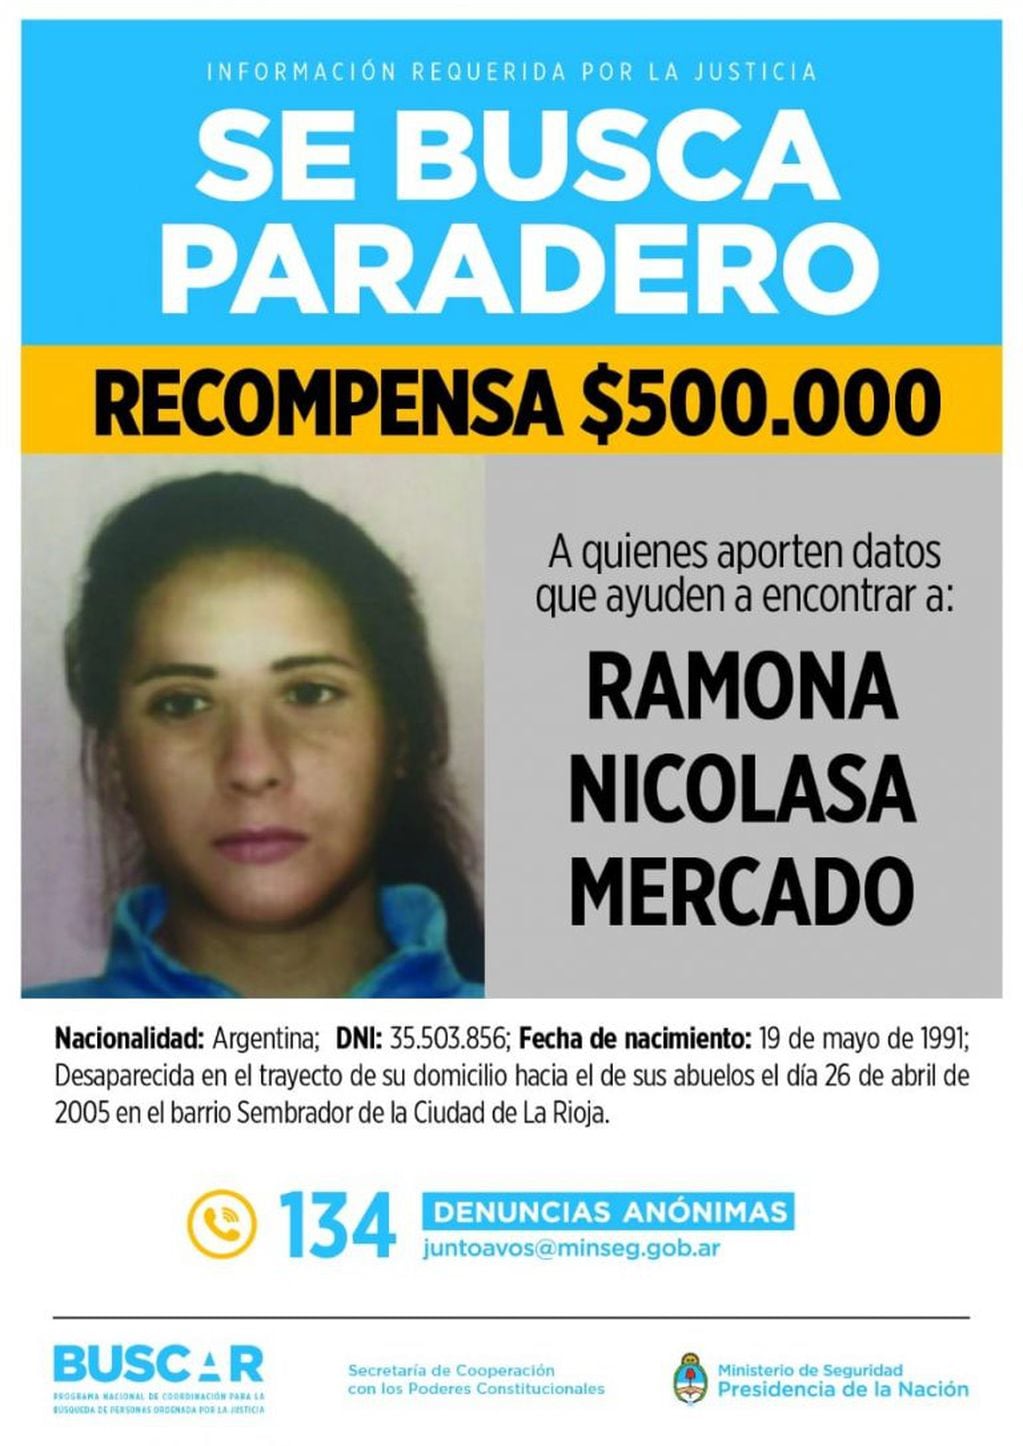 La fiscal de Primera Instancia María Virginia Miguel Carmona, quien investiga la desaparición de Mercado, pidió fijar la recompensa para dar con la chica, que tenía 13 años al momento de su desaparición